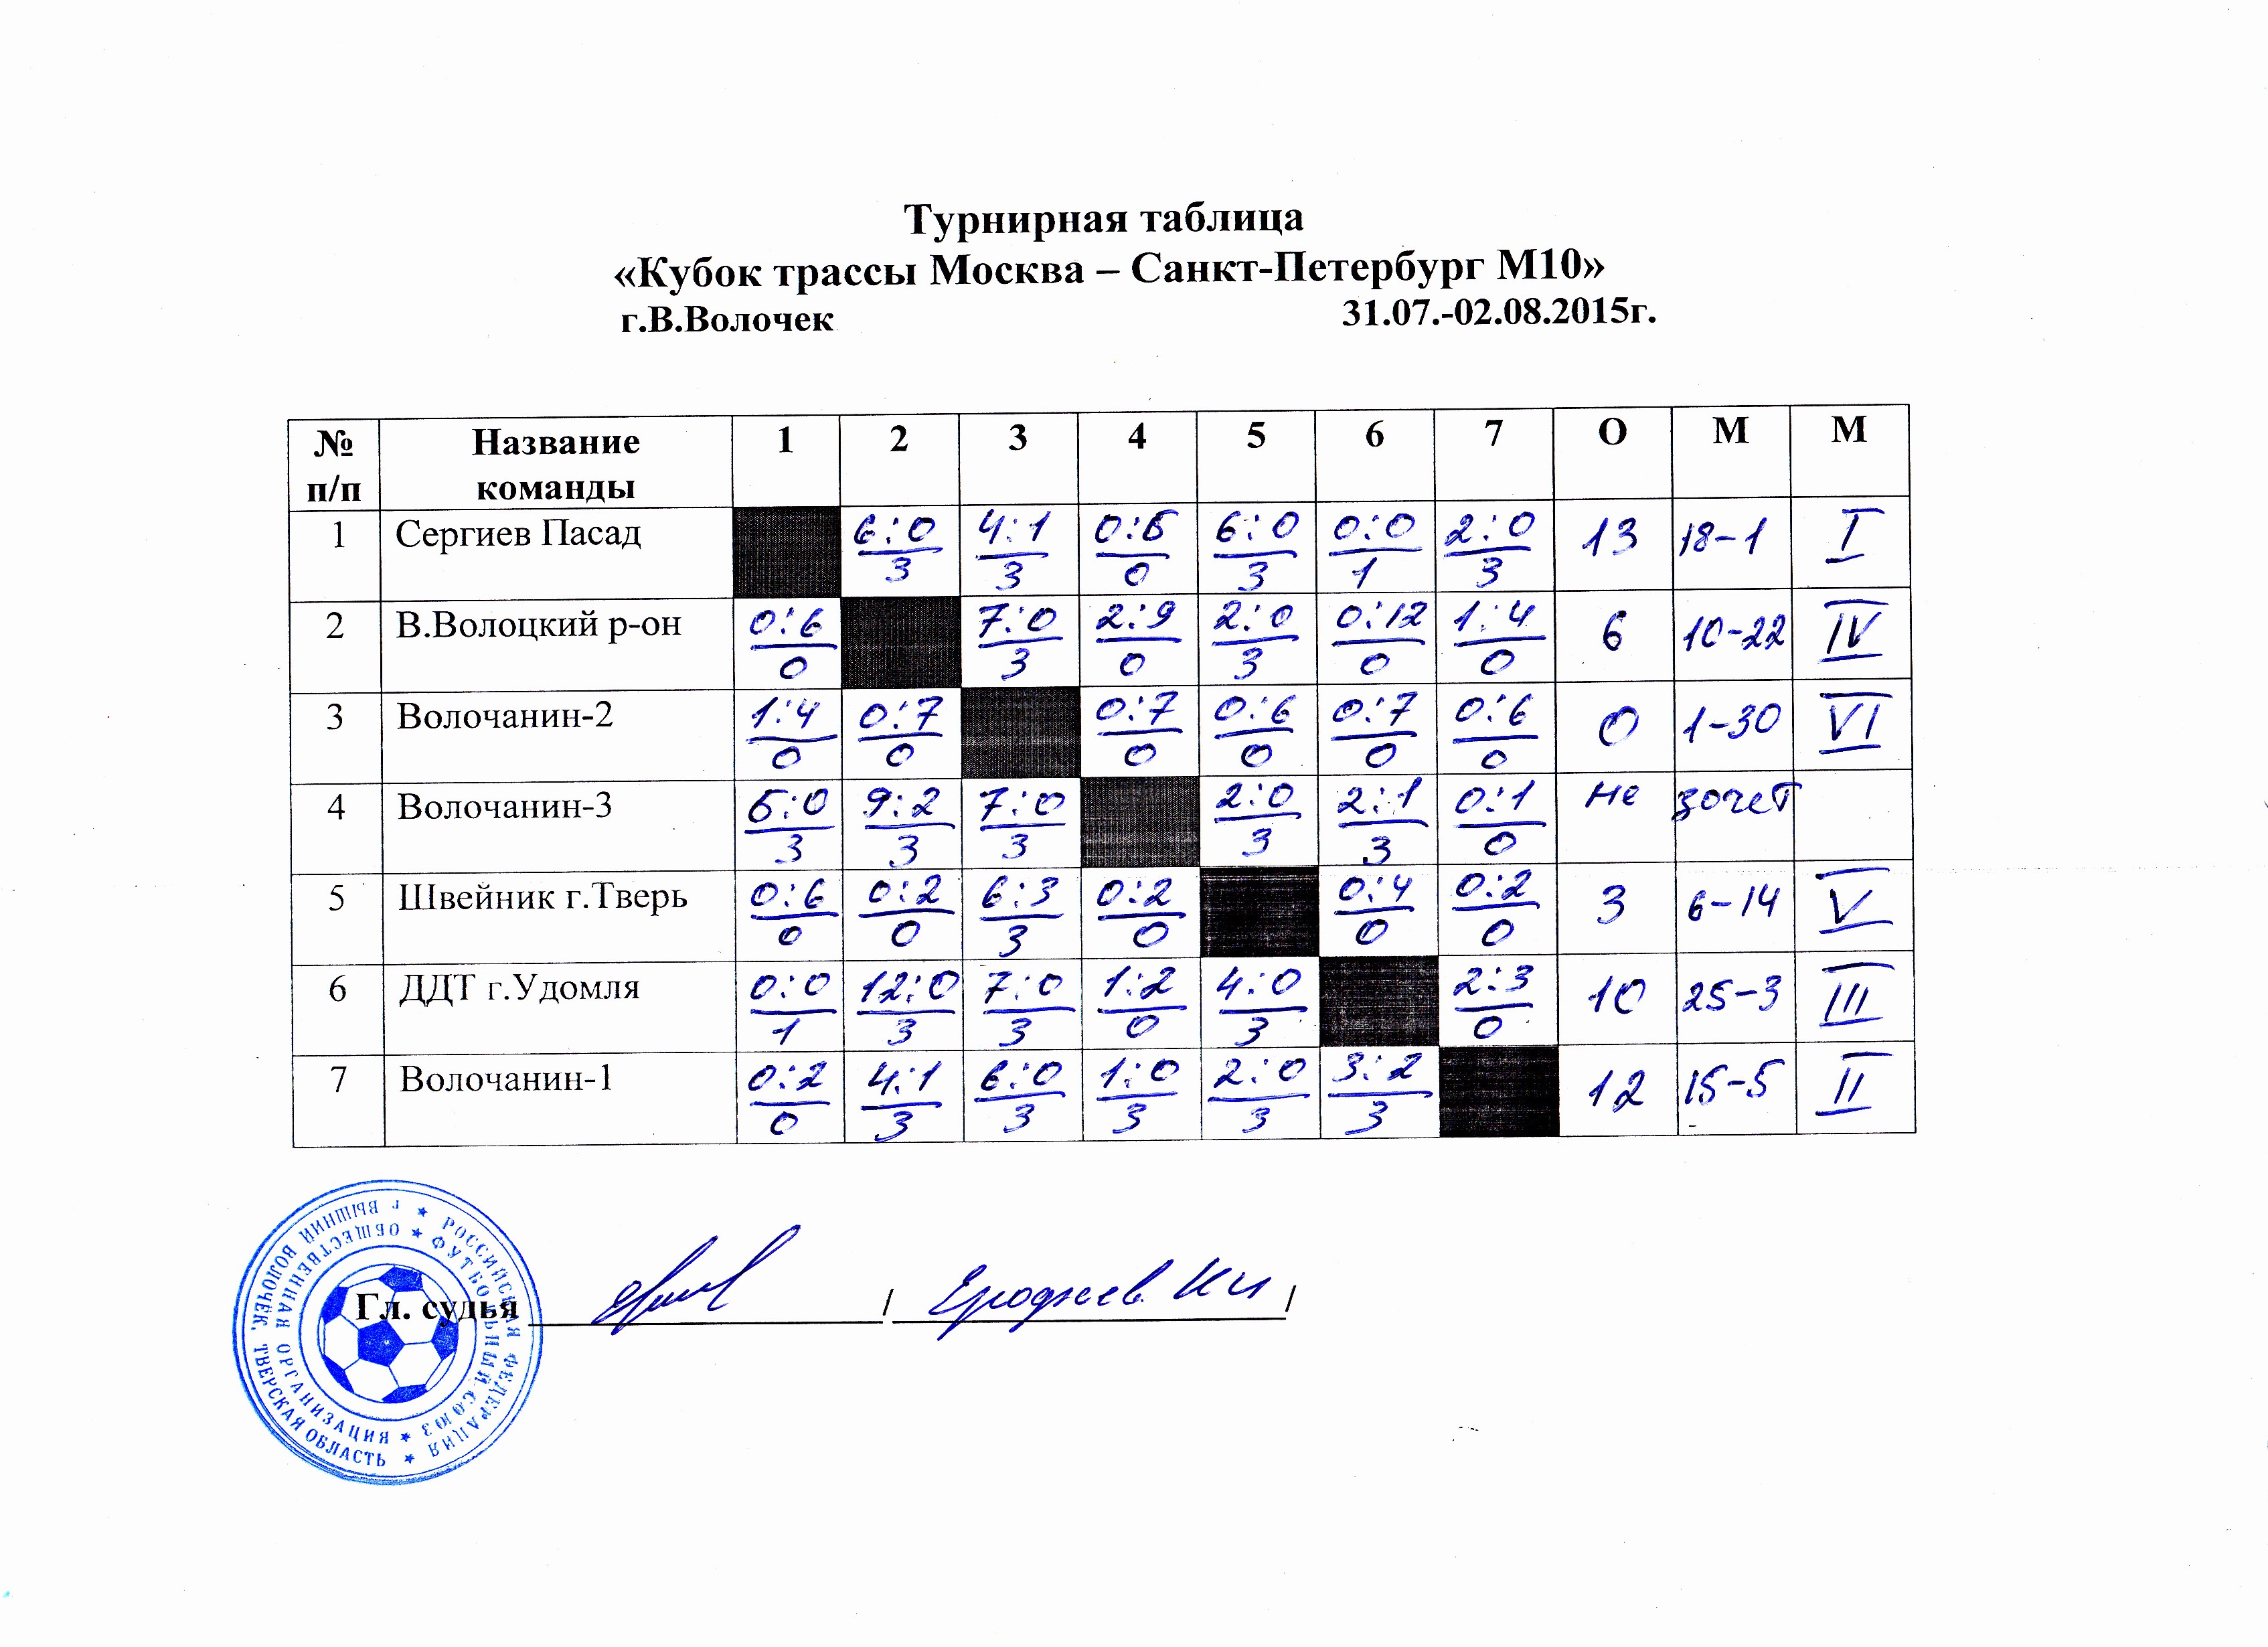 Фонбет кубок россии таблица турнирная расписание игр